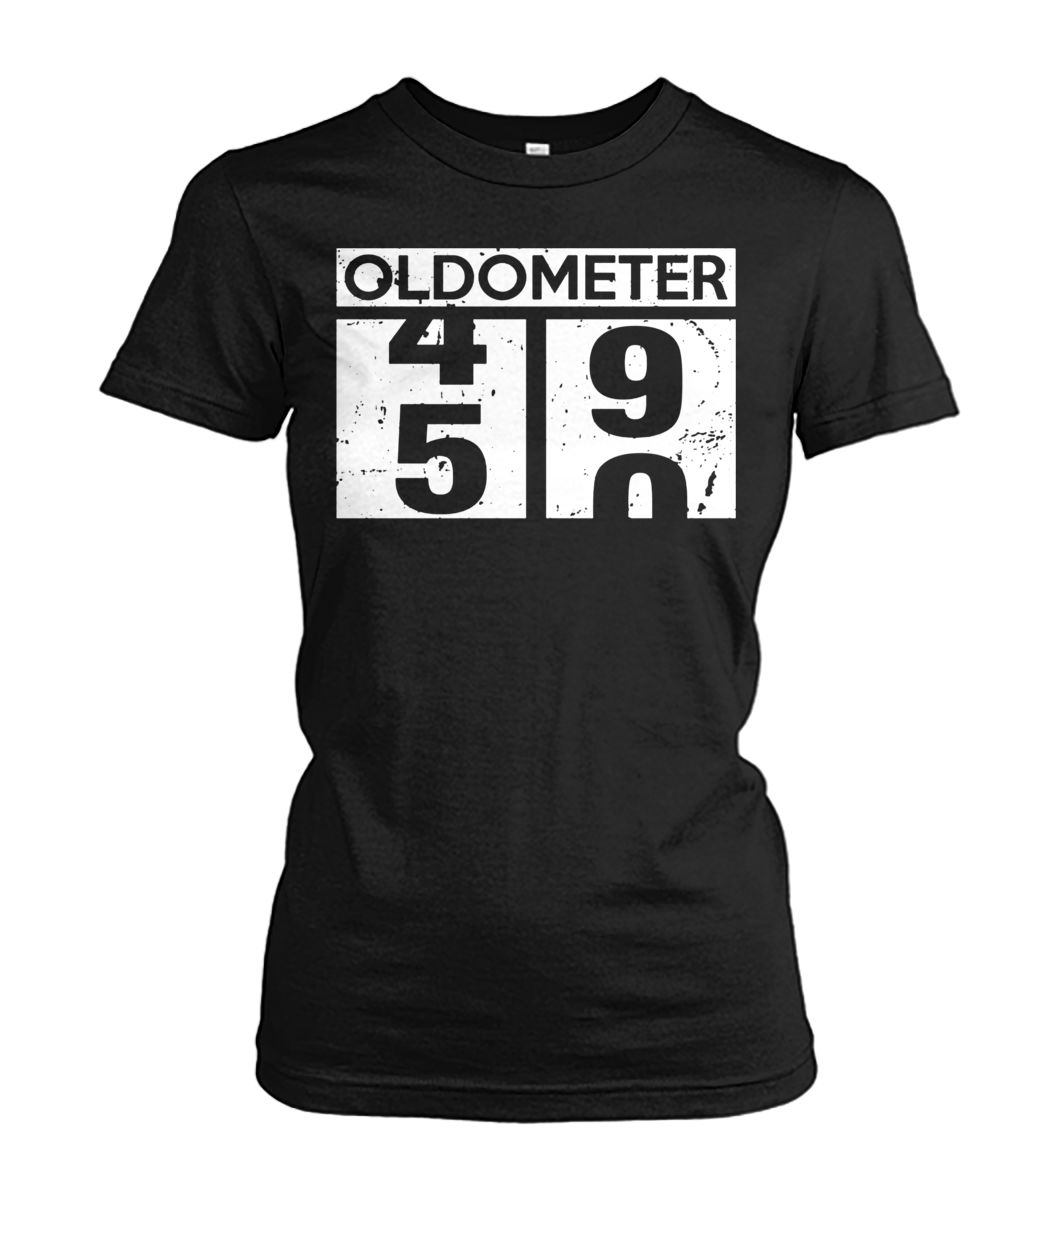 Oldometer 49-50 women's crew tee